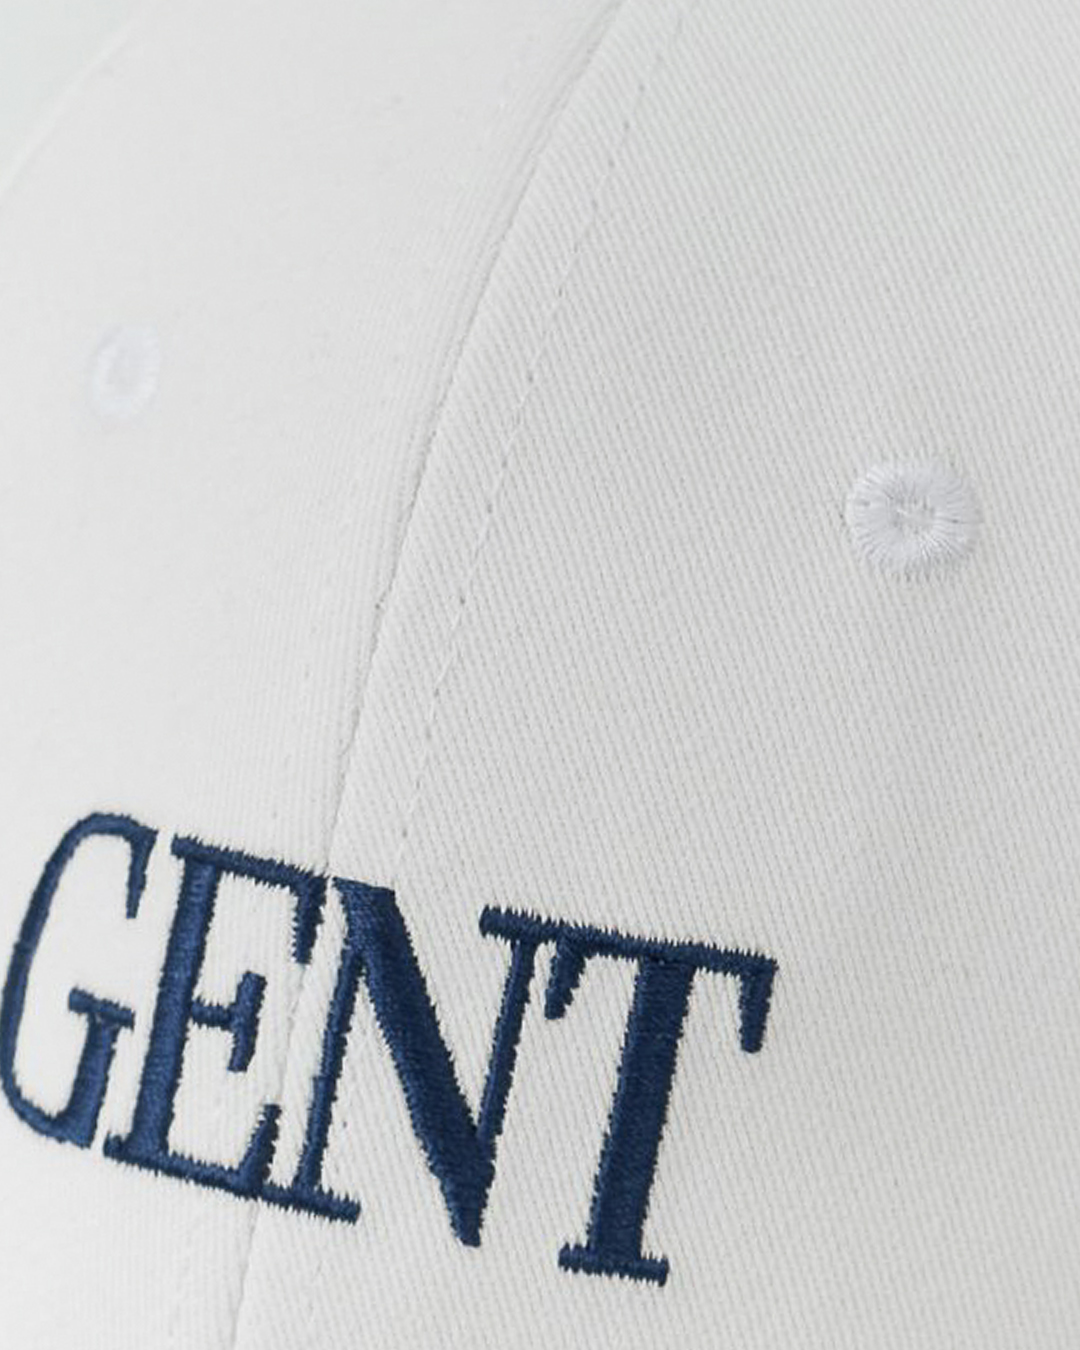 кепка Gent Manners 01_17A_ECBL белый+синий UNI, размер UNI, цвет белый+синий 01_17A_ECBL белый+синий UNI - фото 3